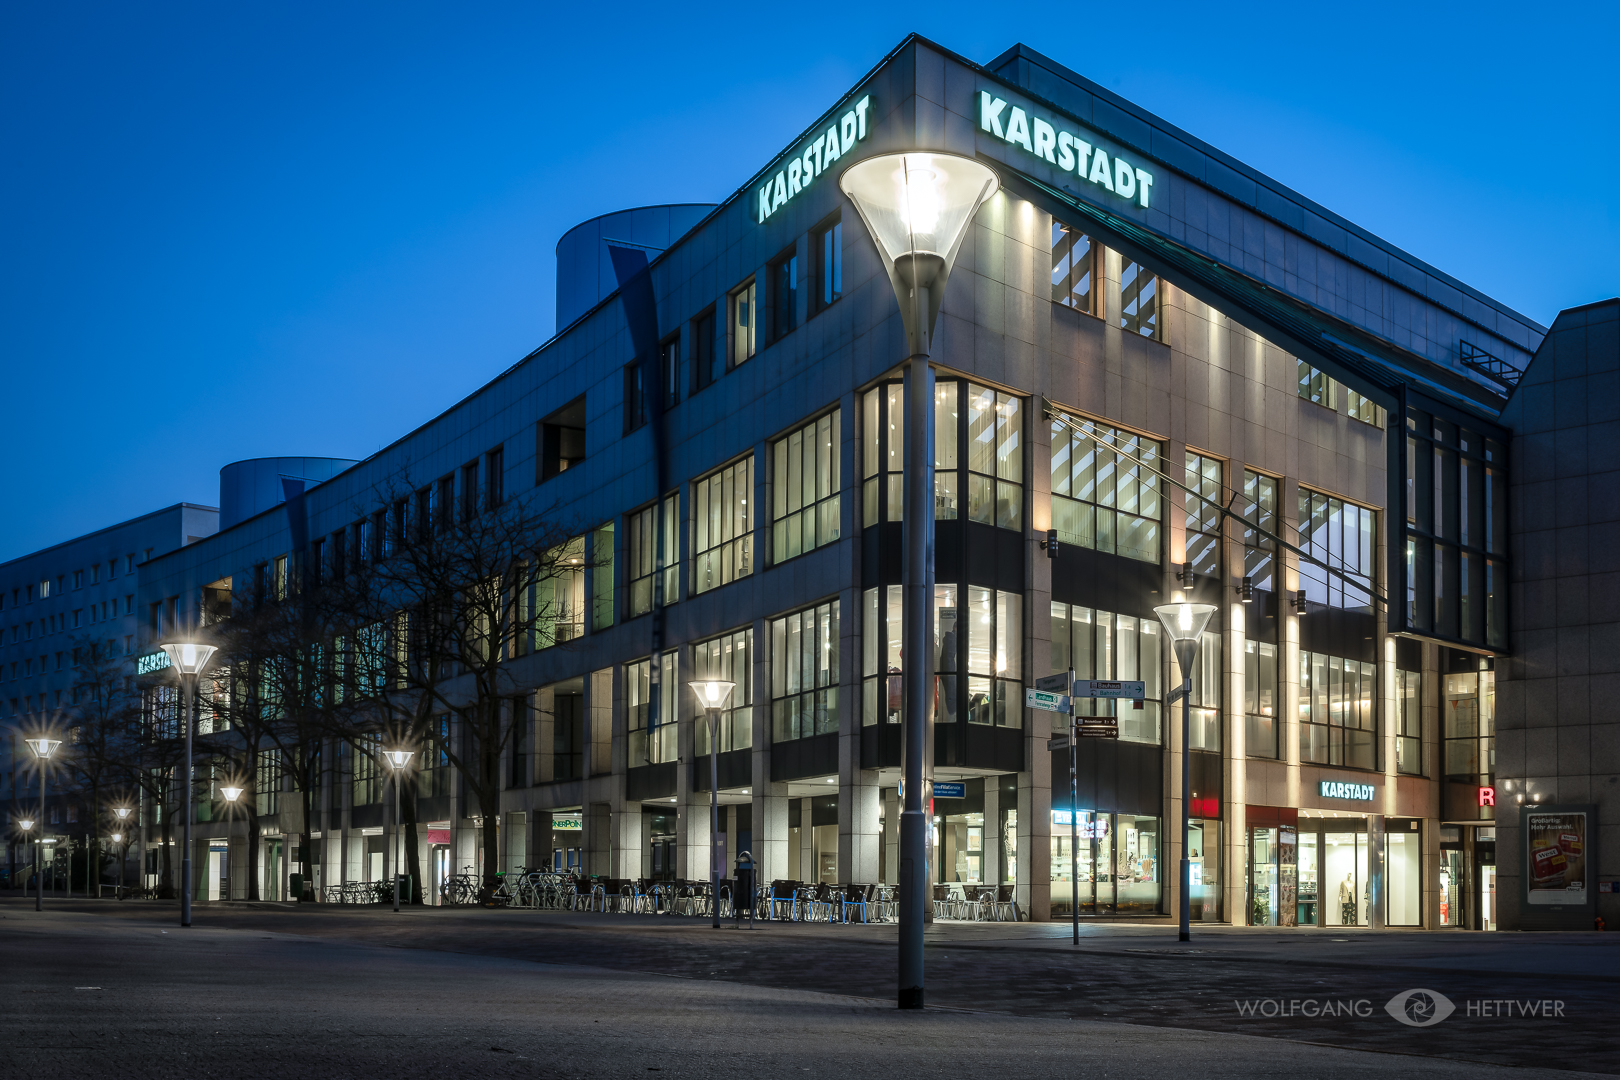 Dessauer Nachtansichten -6- Karstadt im Rathauscenter